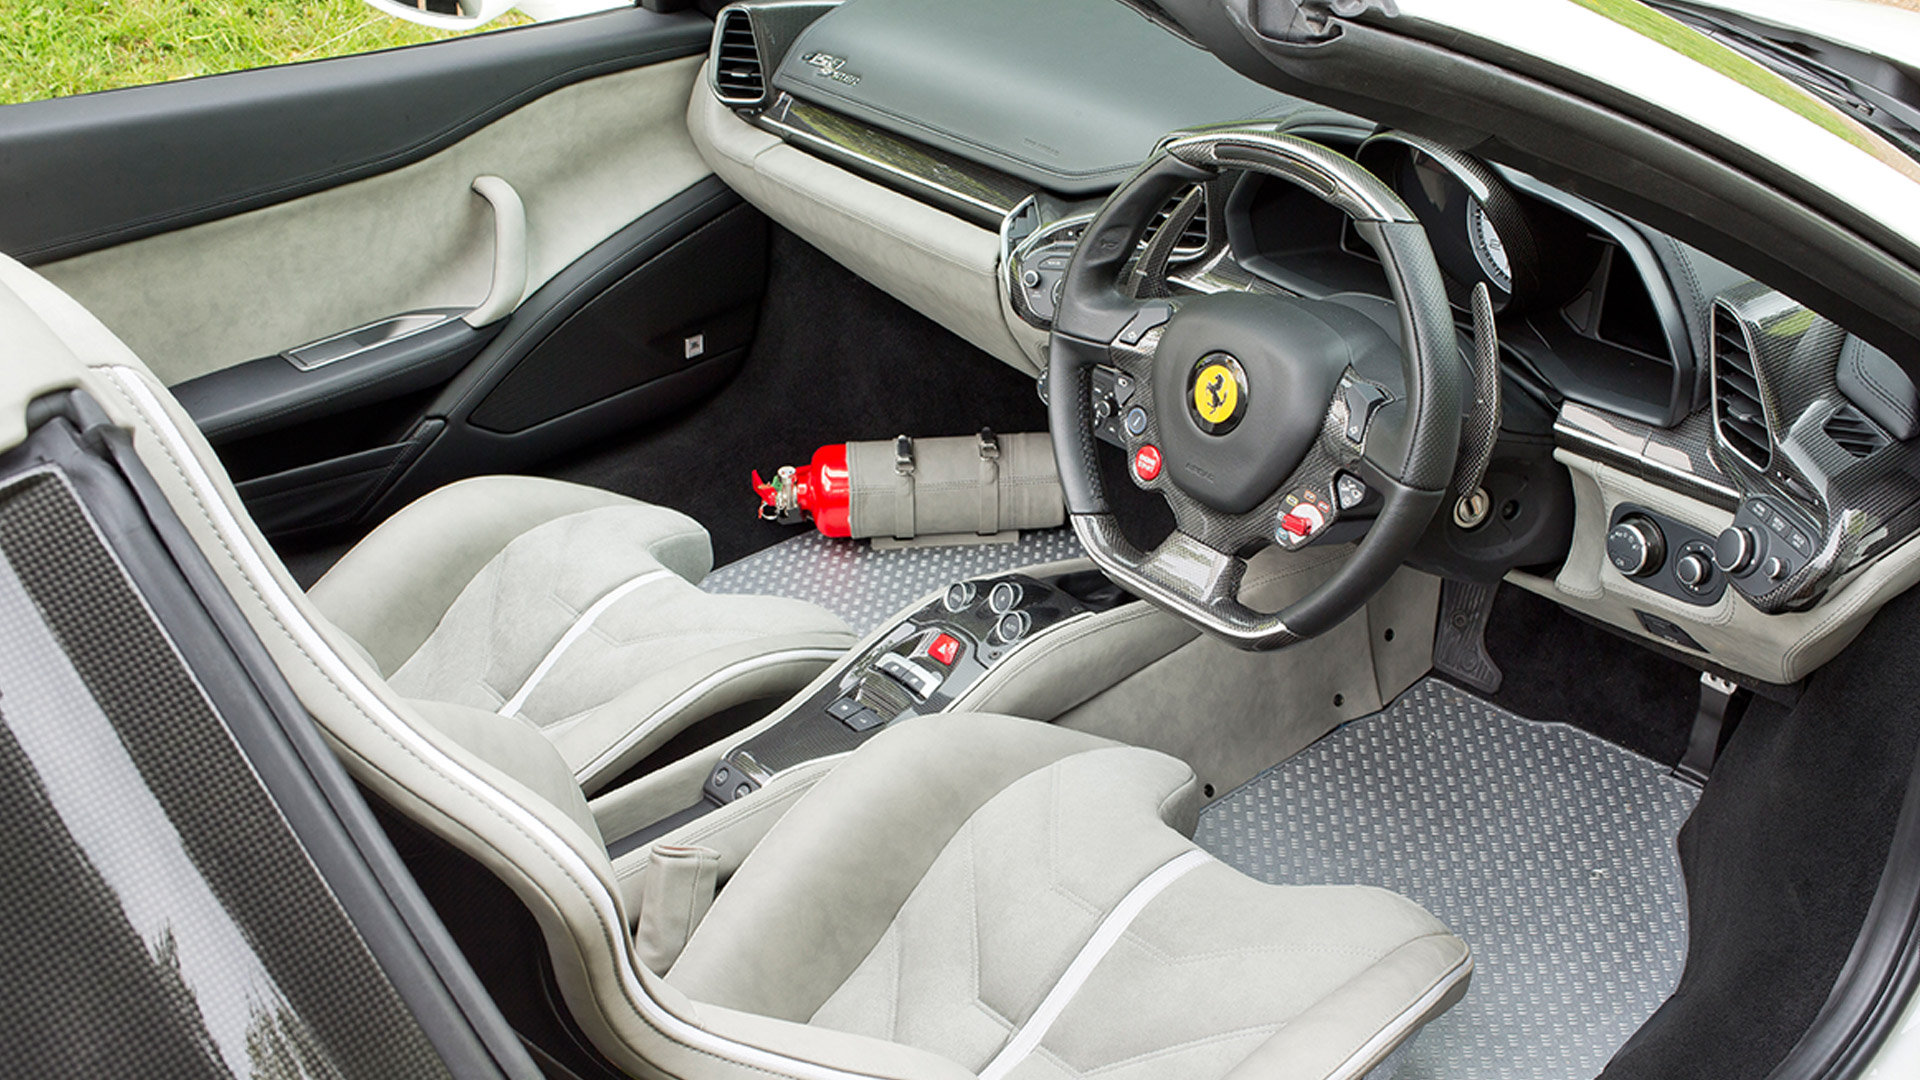 Ferrari 458 2015 Spider Interior